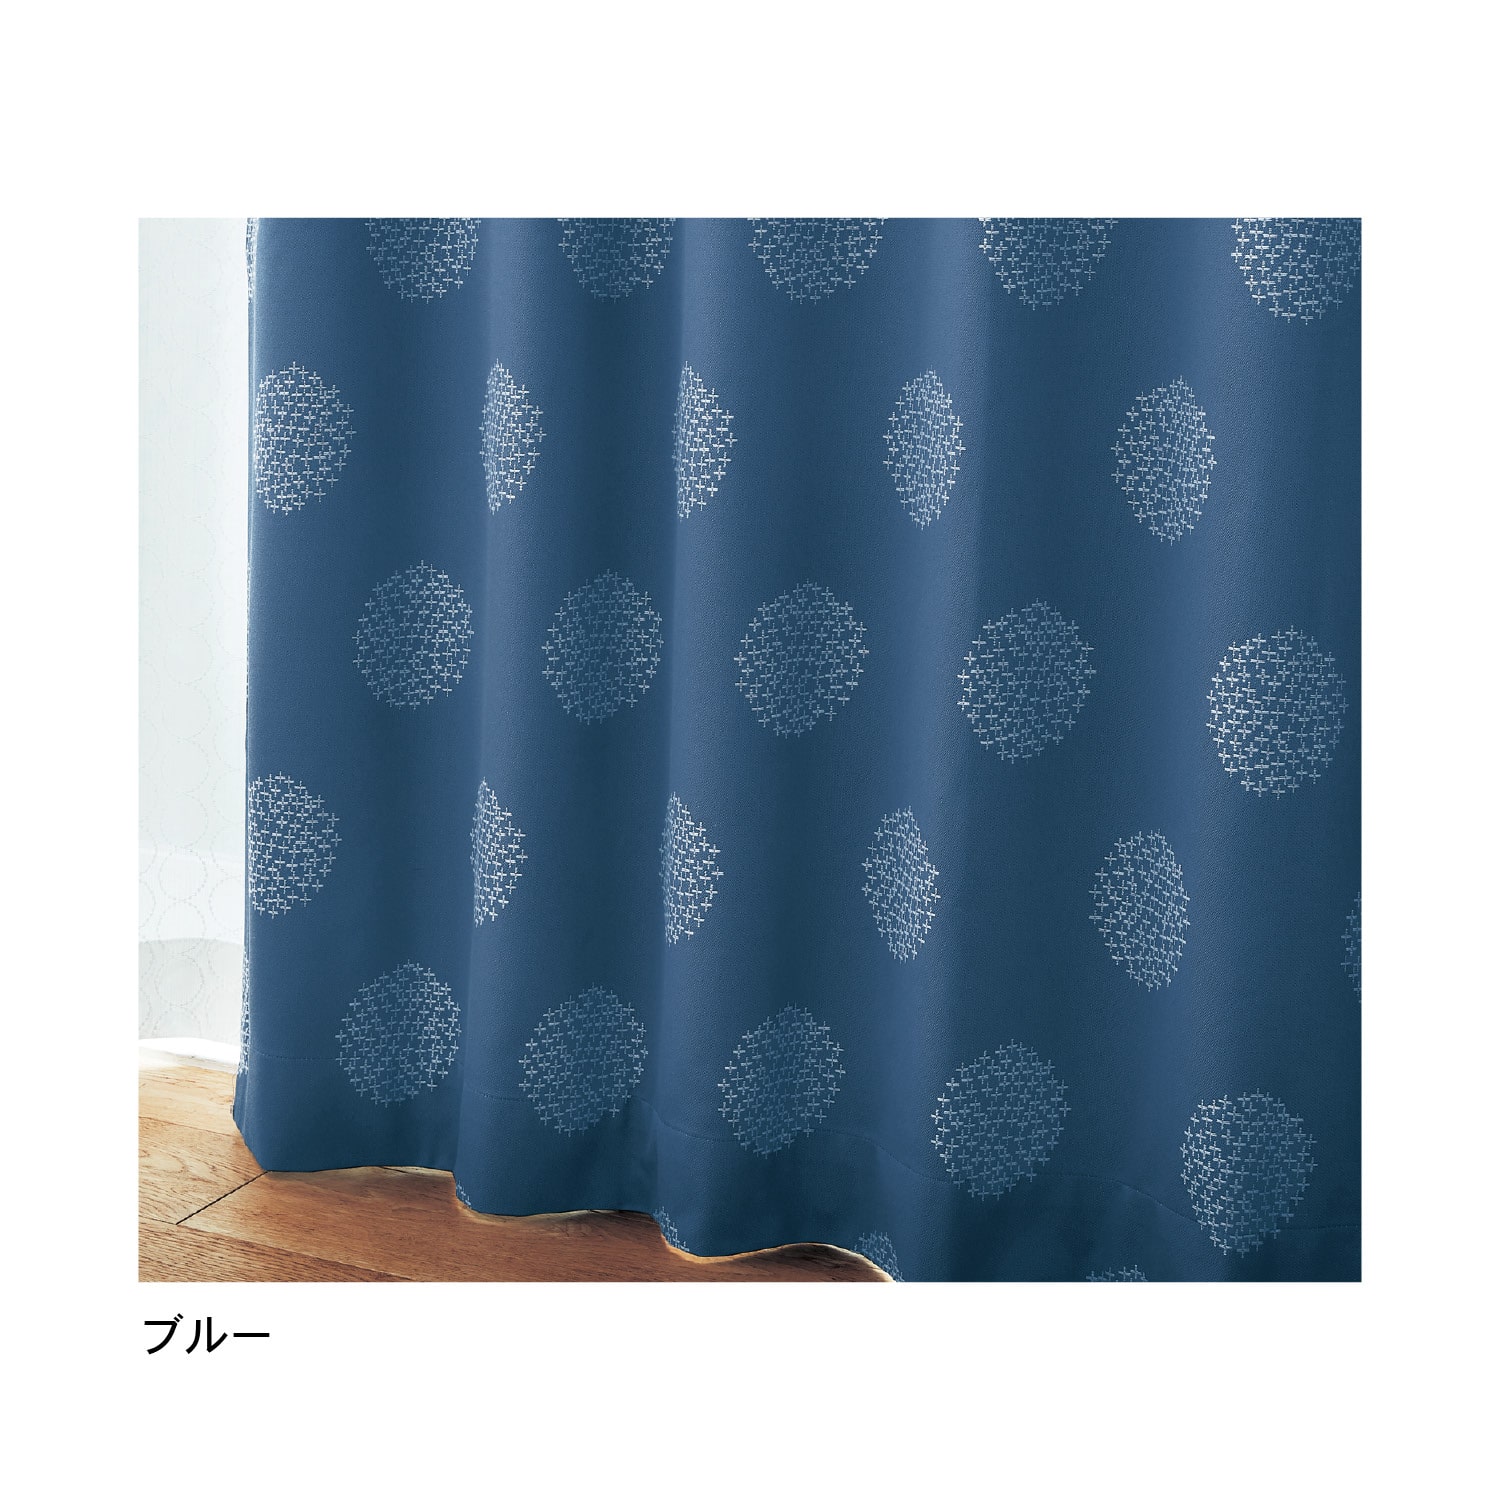 ベルメゾン カーテン 刺し子デザインの遮光・遮熱・防音カーテン 